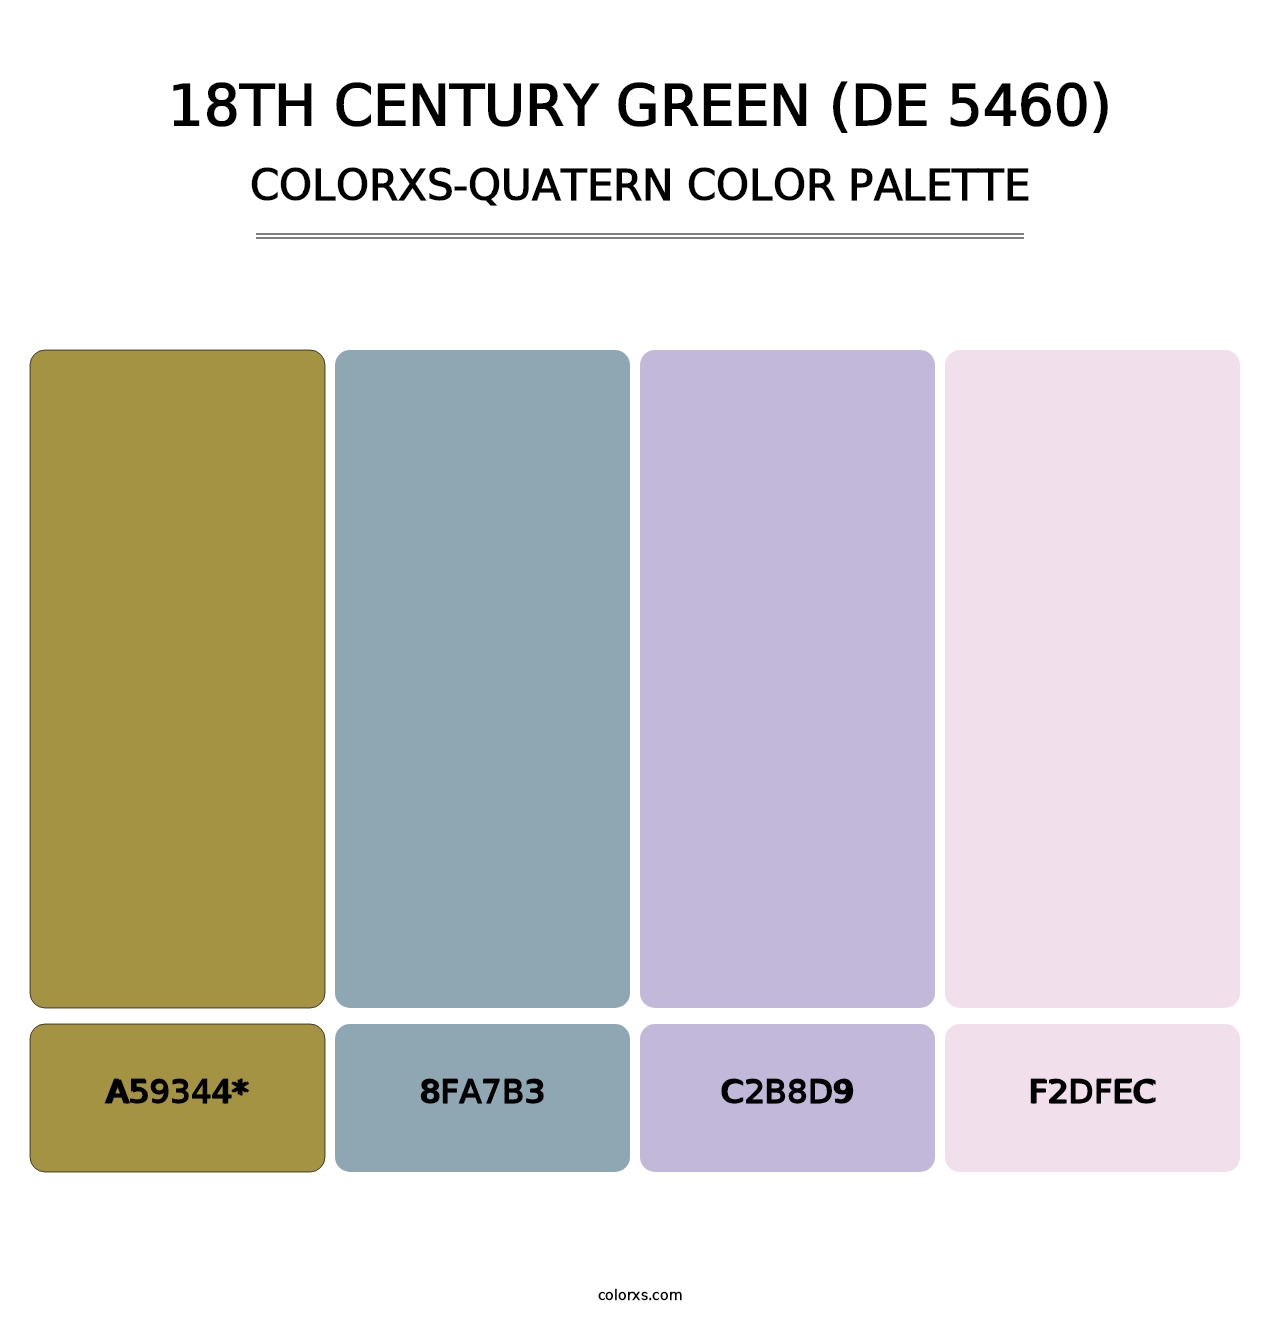 18th Century Green (DE 5460) - Colorxs Quad Palette